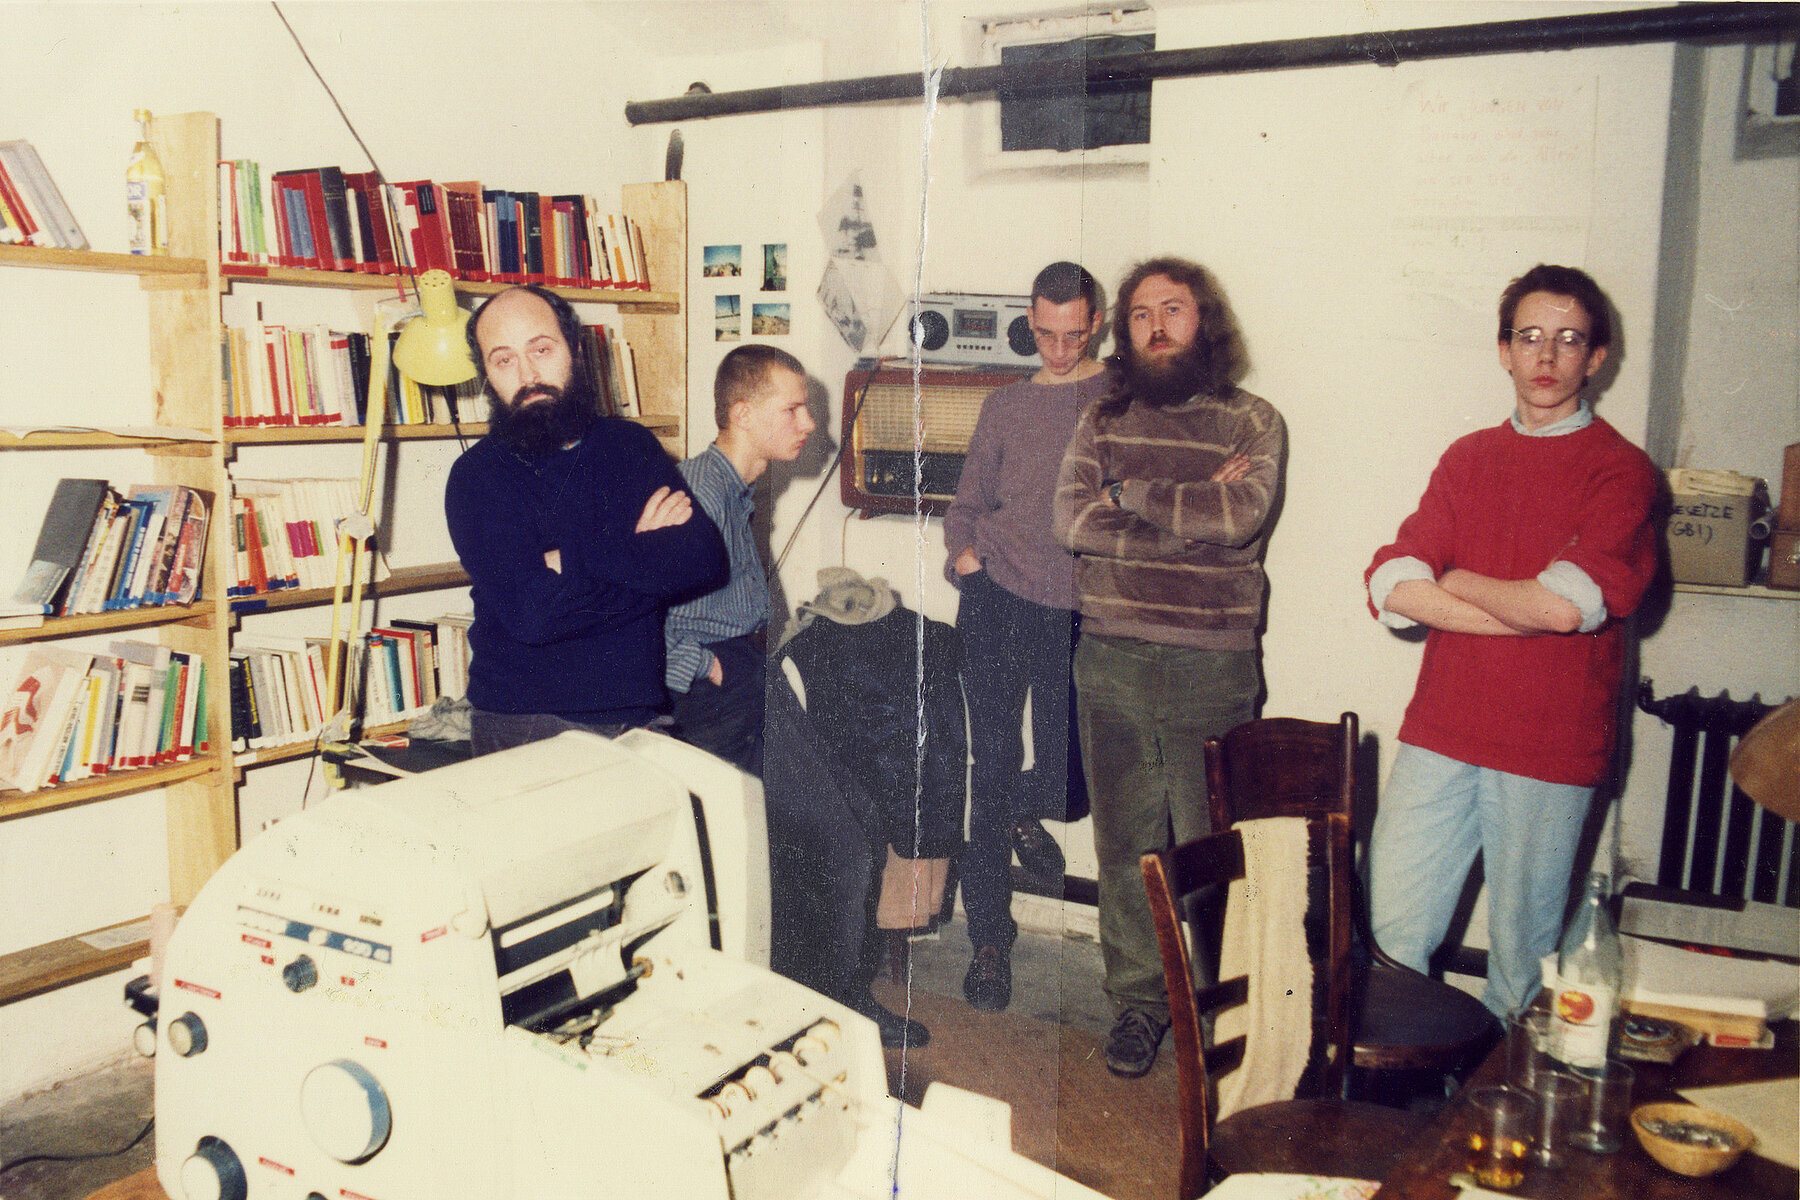 Fünf Männer im Alter von 14 bis 34 Jahren stehen in der Umweltbibliothek, links hinter ihnen befindet sich ein Bücherregal, im Vordergrund steht eine Druckmaschine.